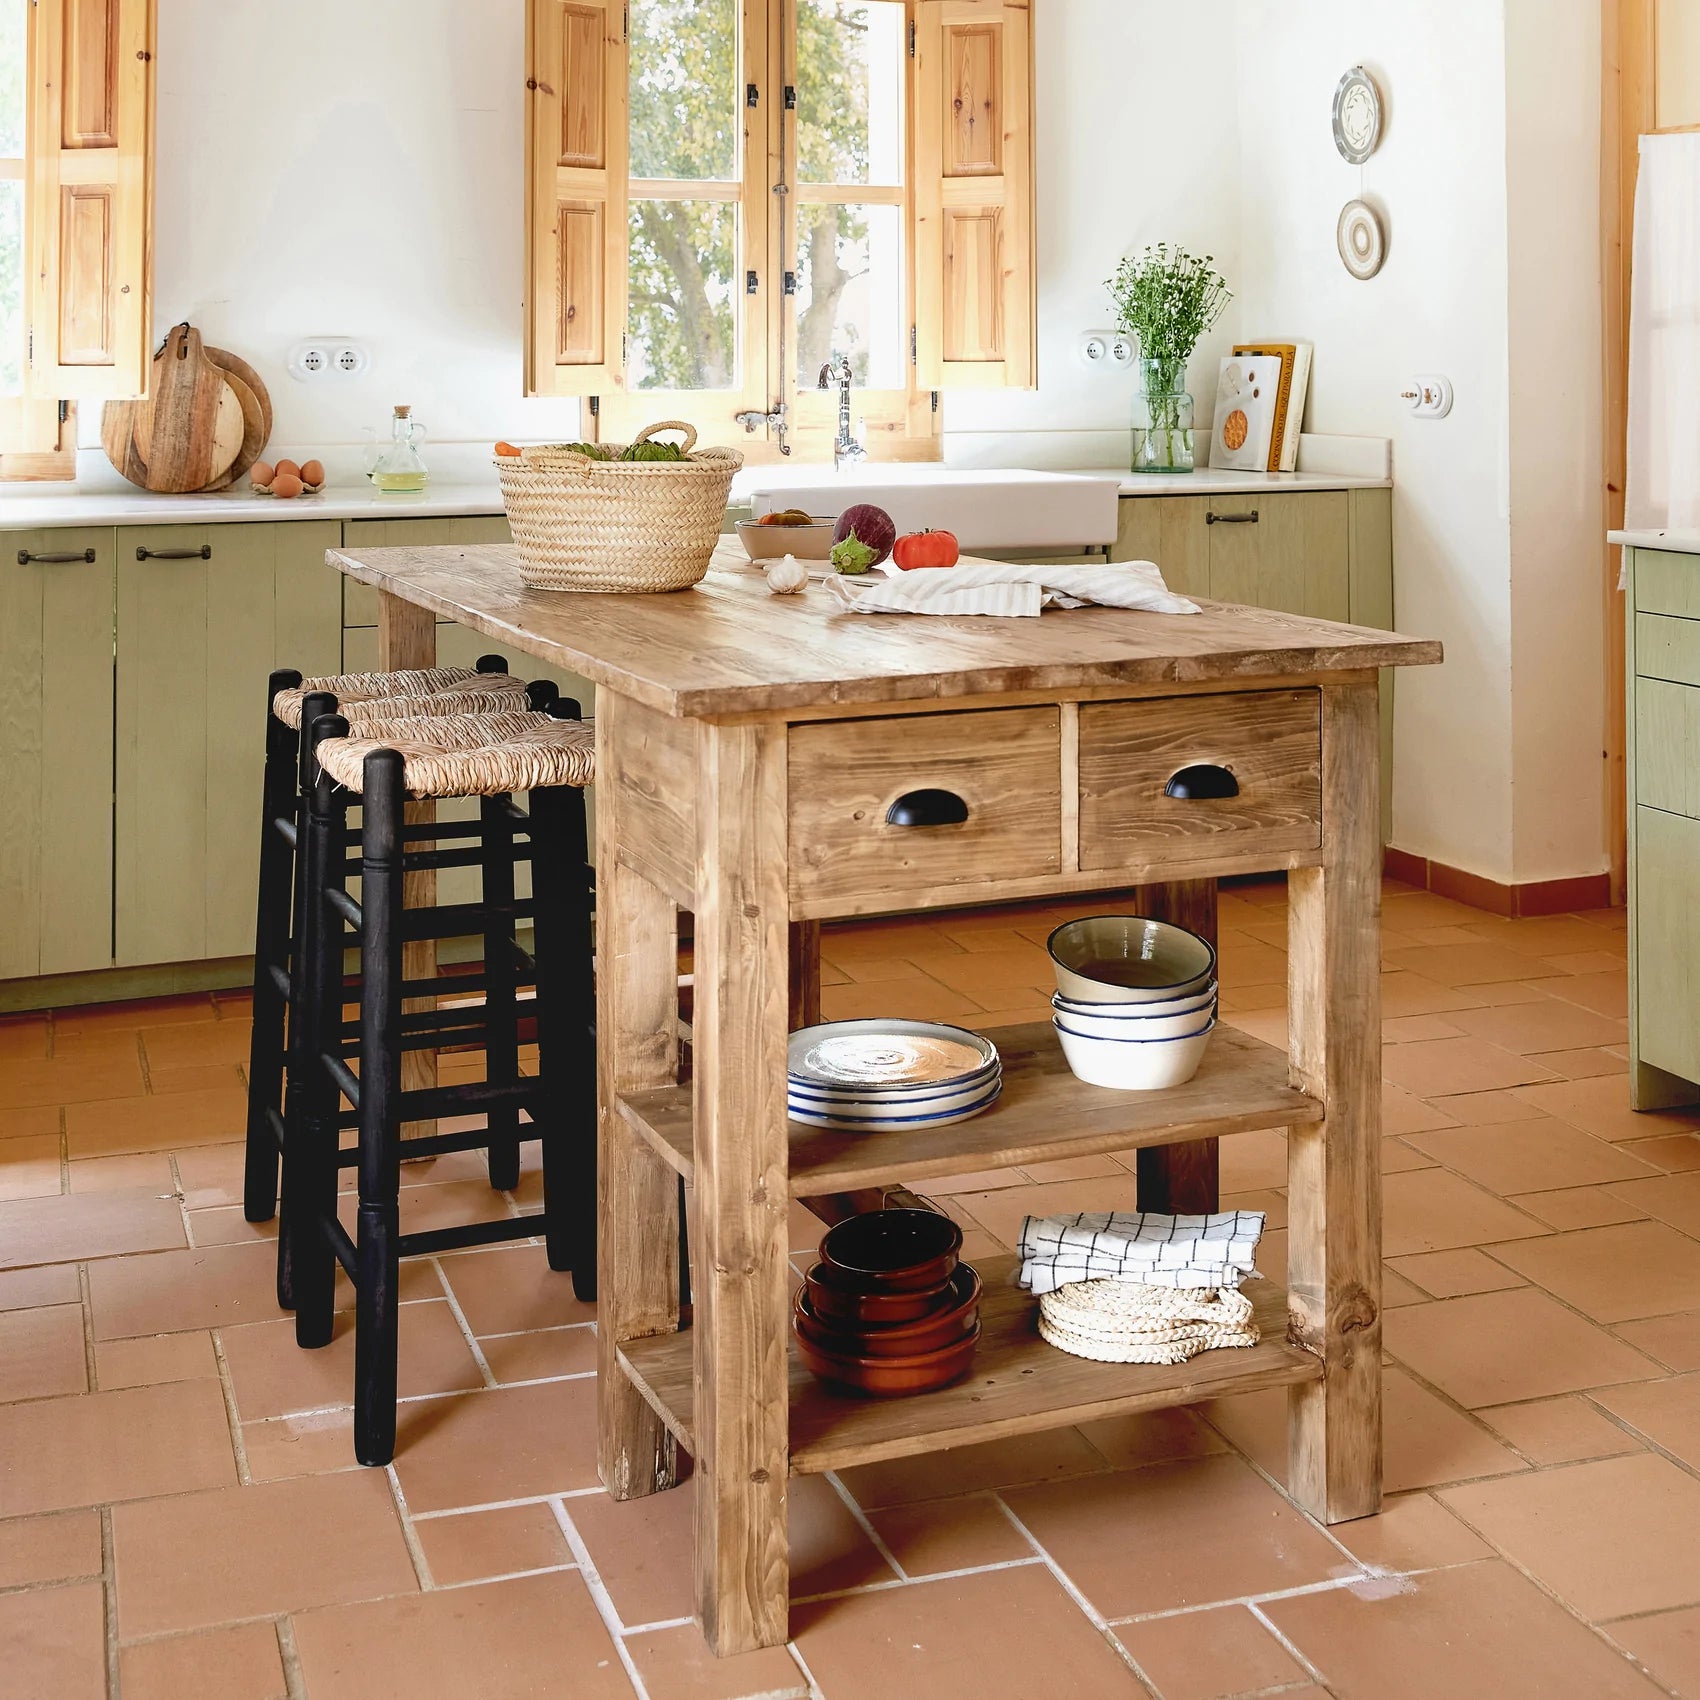 Isla de cocina de madera para cocinas rústicas de estilo vintage